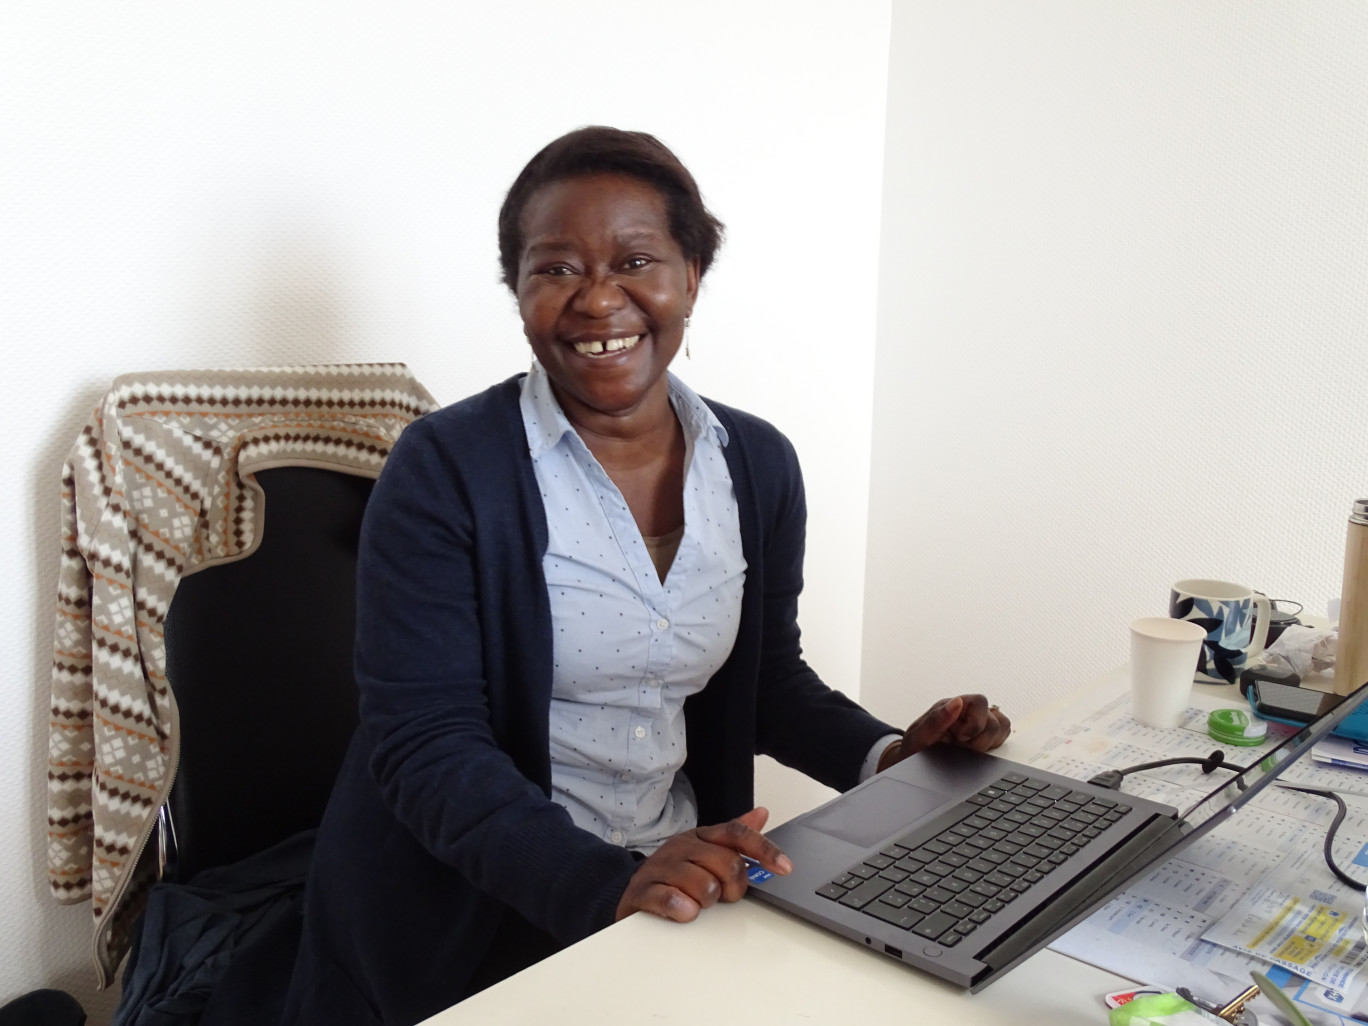 Laëtitia Ngama, fondatrice d’Eden ETTP, veut convaincre les entreprises de profiter du travail à temps partagé pour répondre à leurs besoins en main d’œuvre. (Aletheia Press / Nadège Hubert)